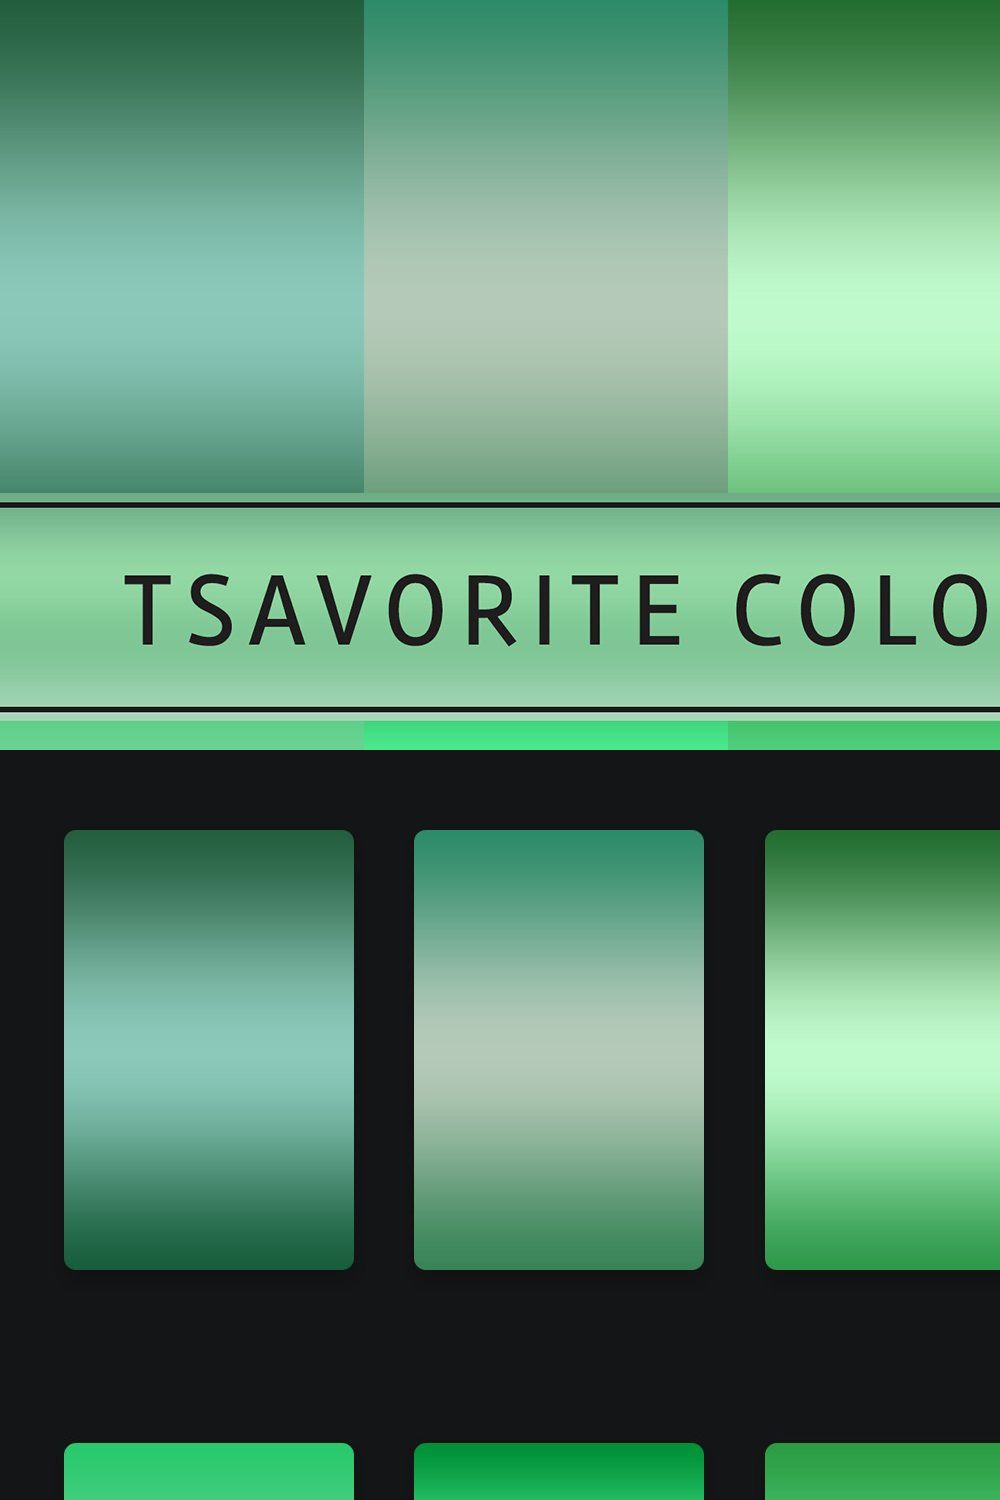 Tsavorite Color Gradients pinterest preview image.